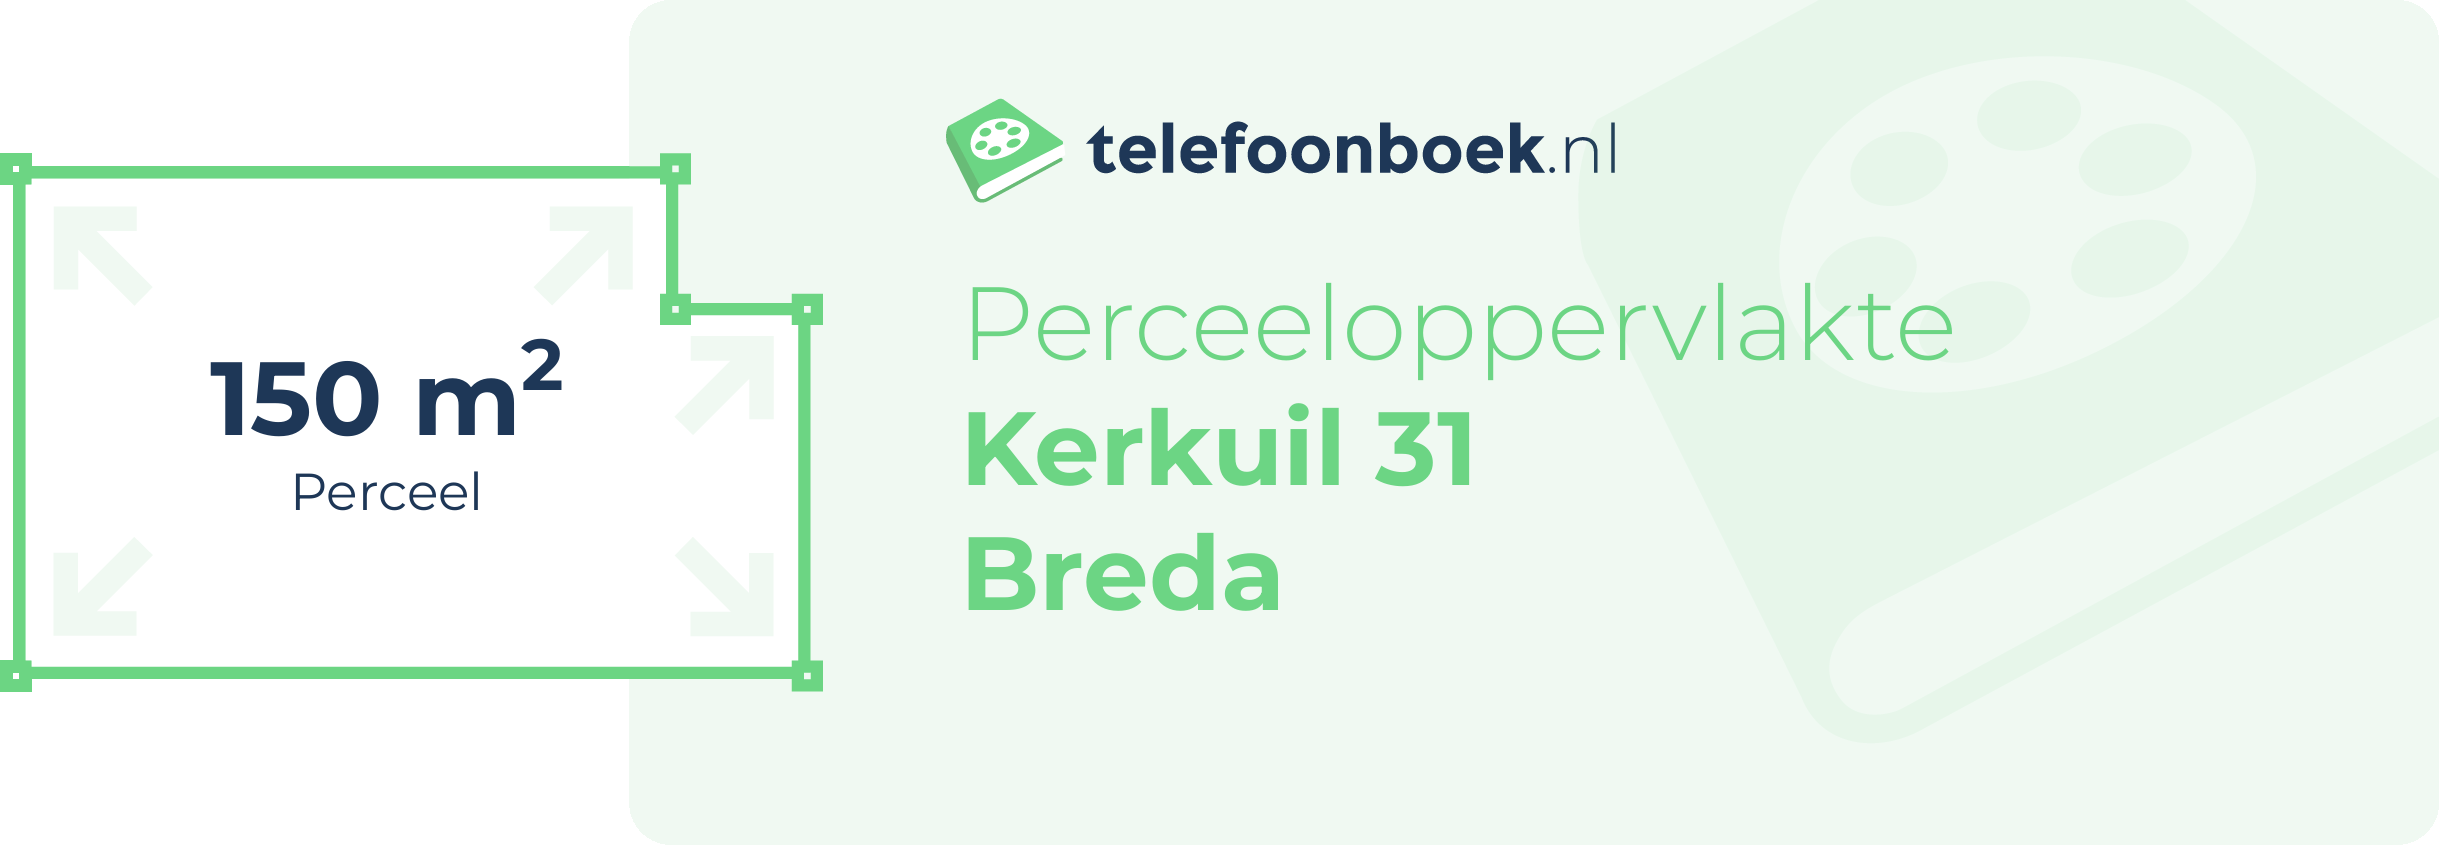 Perceeloppervlakte Kerkuil 31 Breda